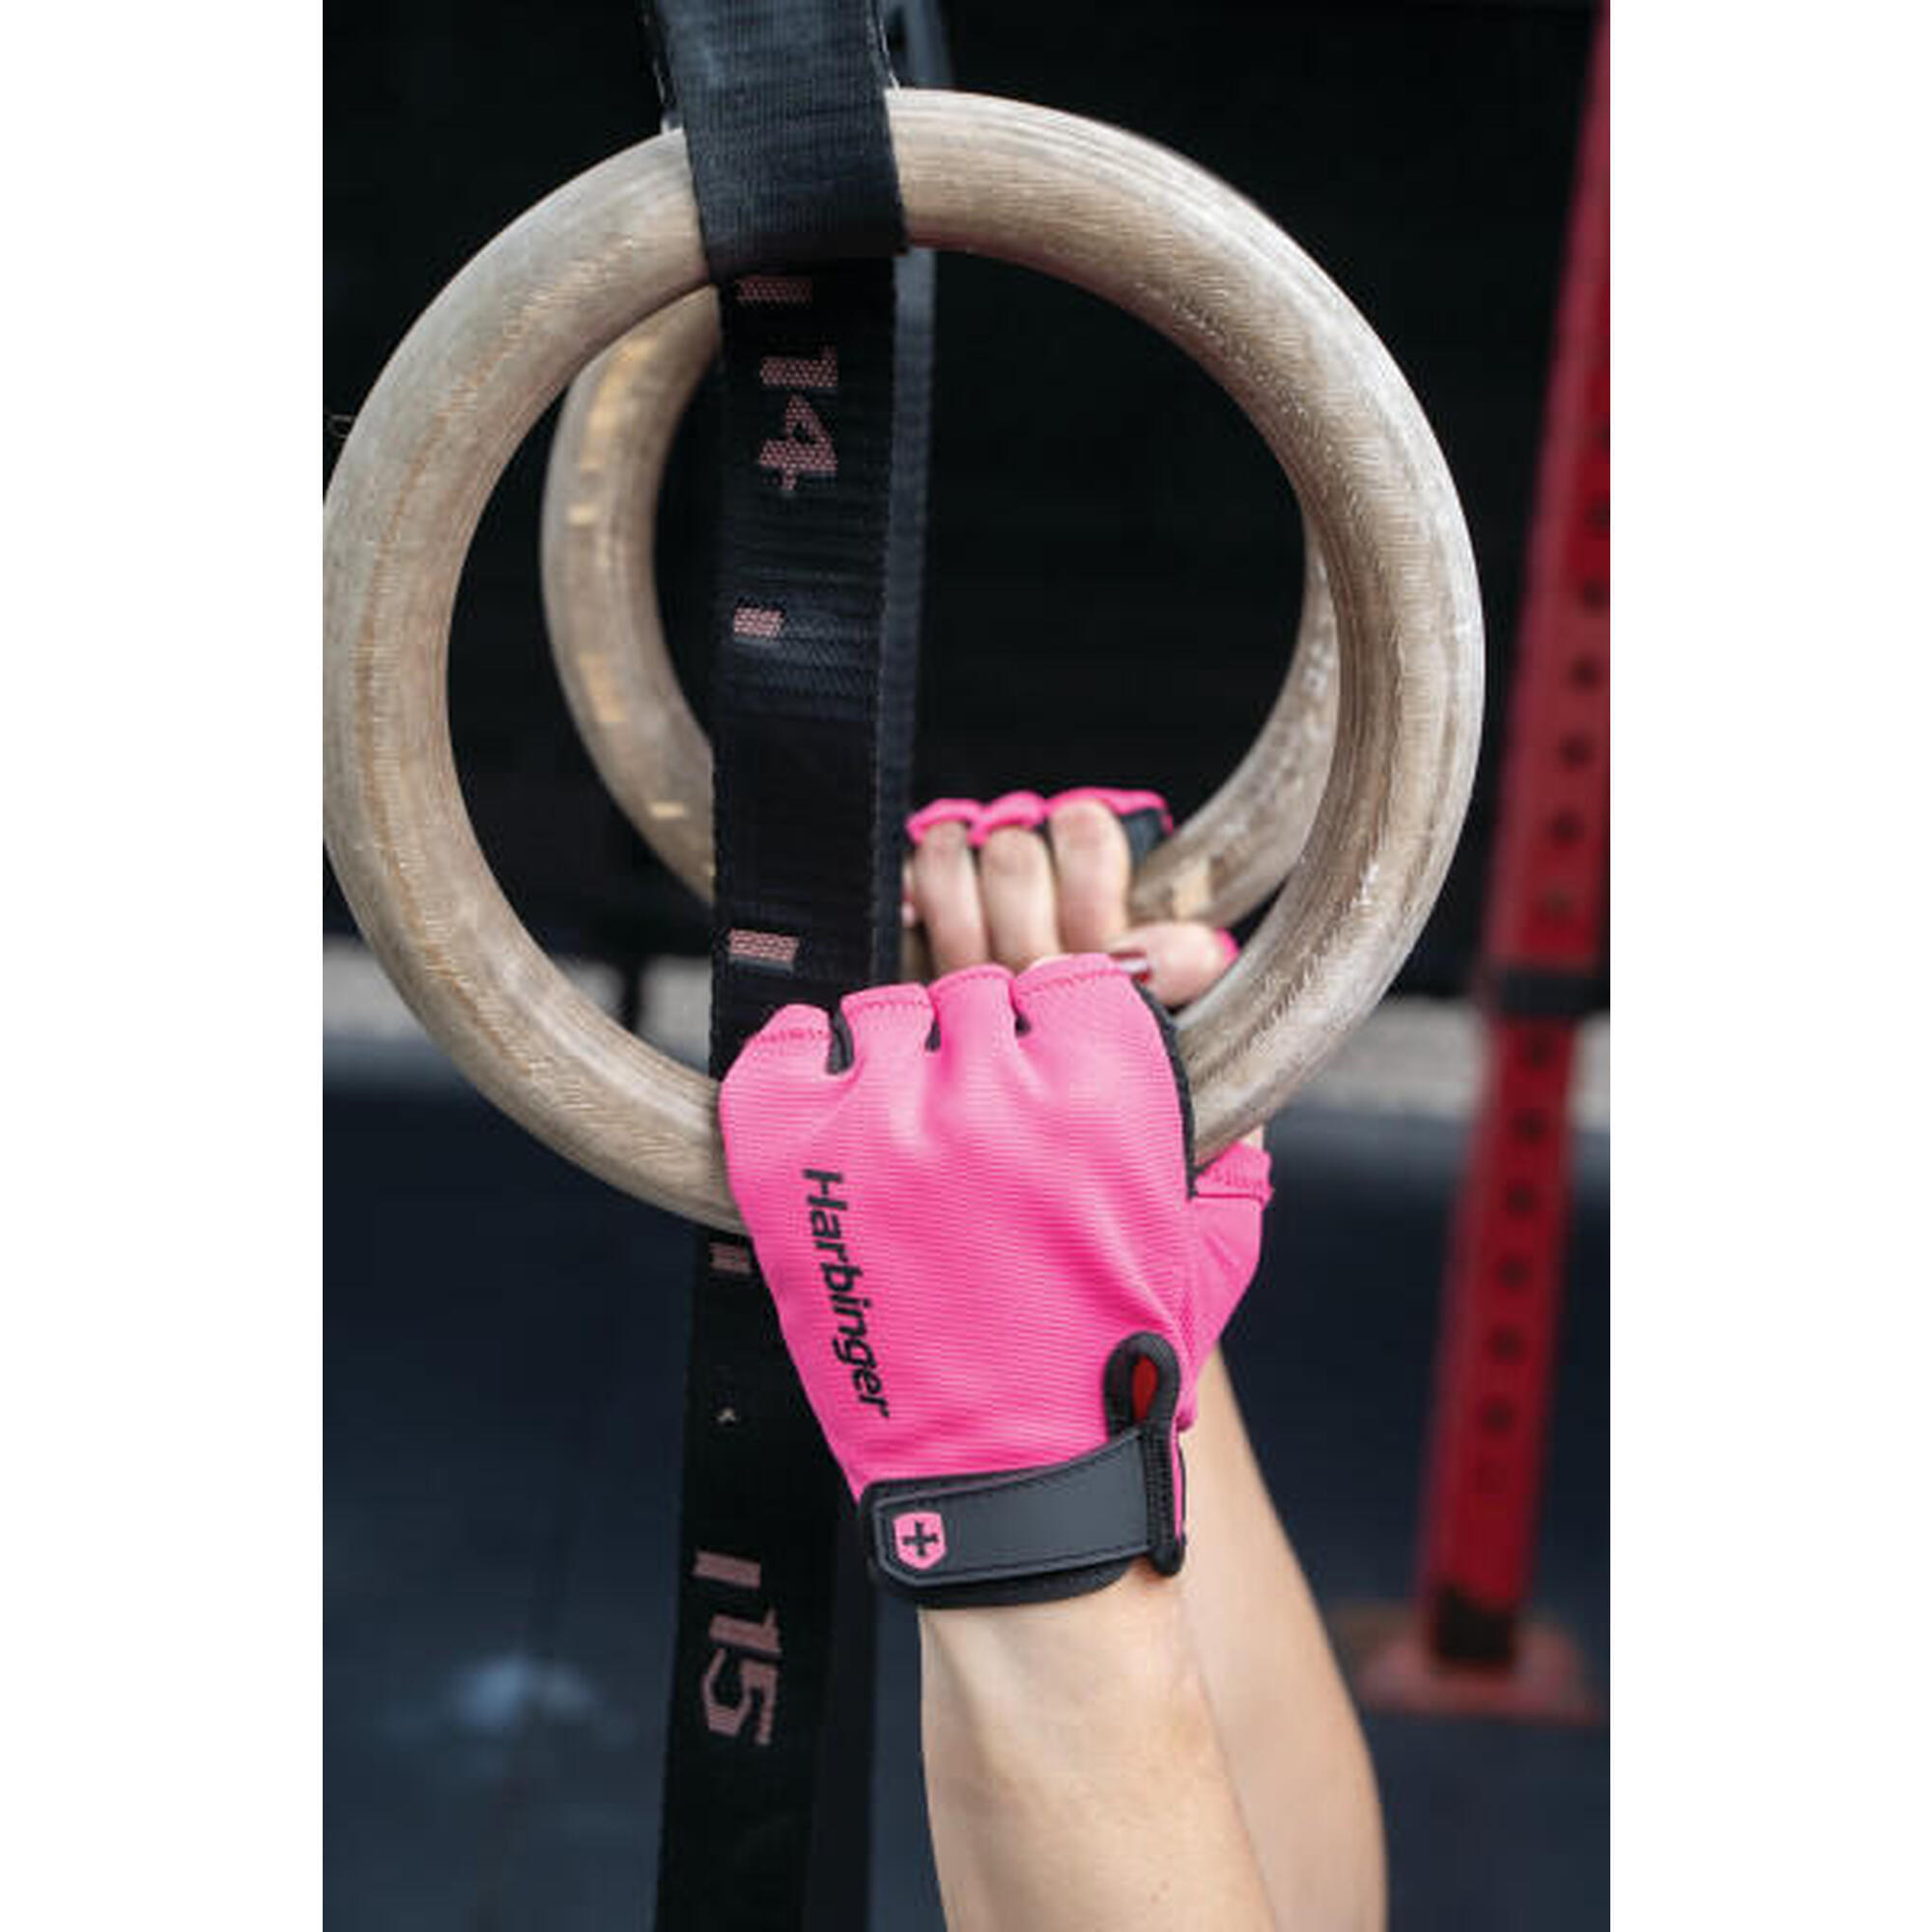 Gant d'haltérophilie rose pour femme pour un confort d'entraînement taille XS